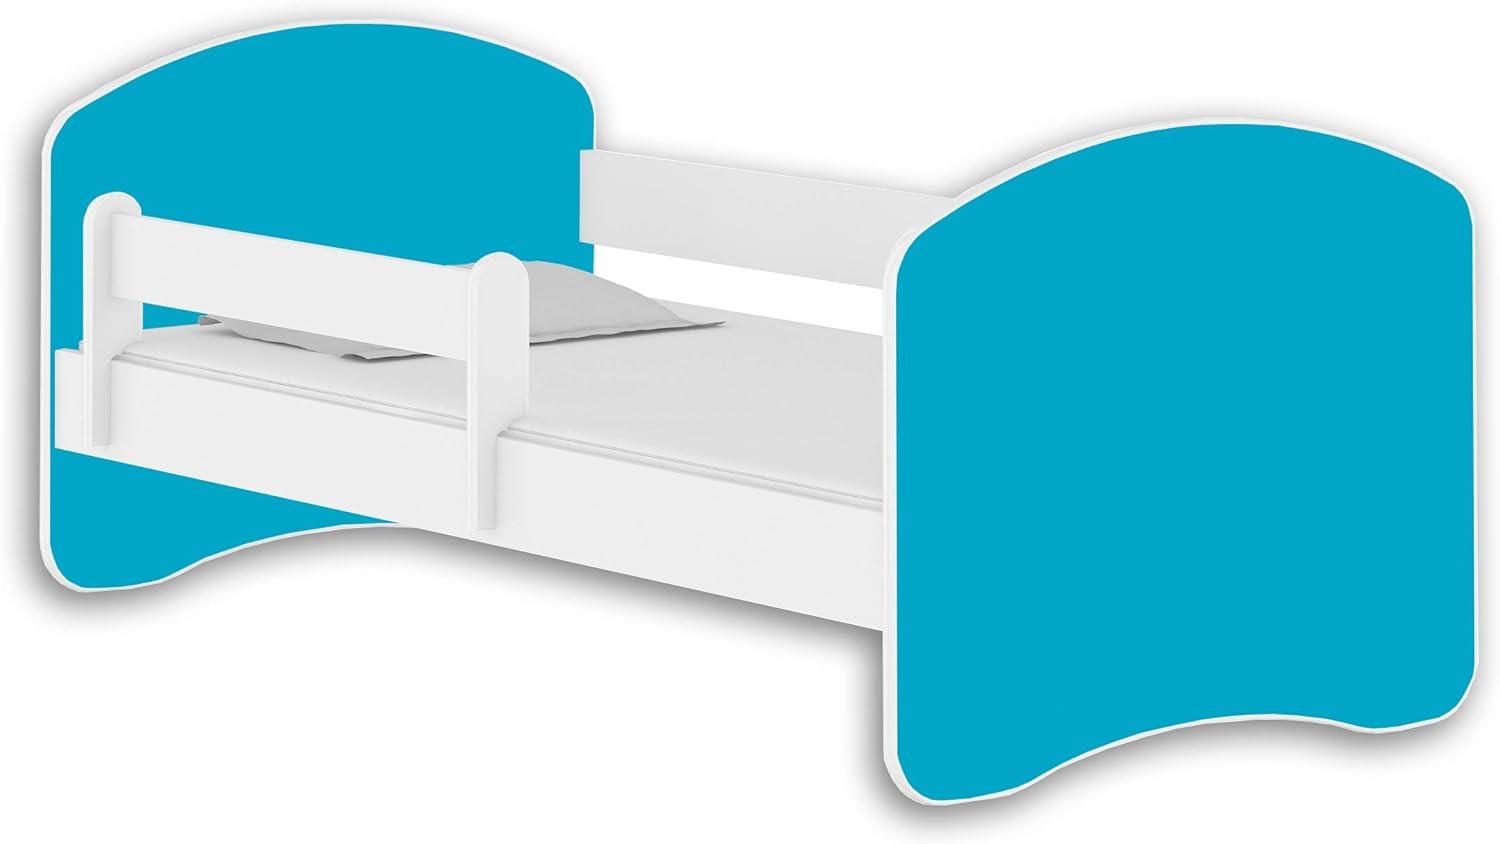 Jugendbett Kinderbett mit einer Schublade mit Rausfallschutz und Matratze Weiß ACMA II 140 160 180 (160x80 cm, Weiß - Blau) Bild 1